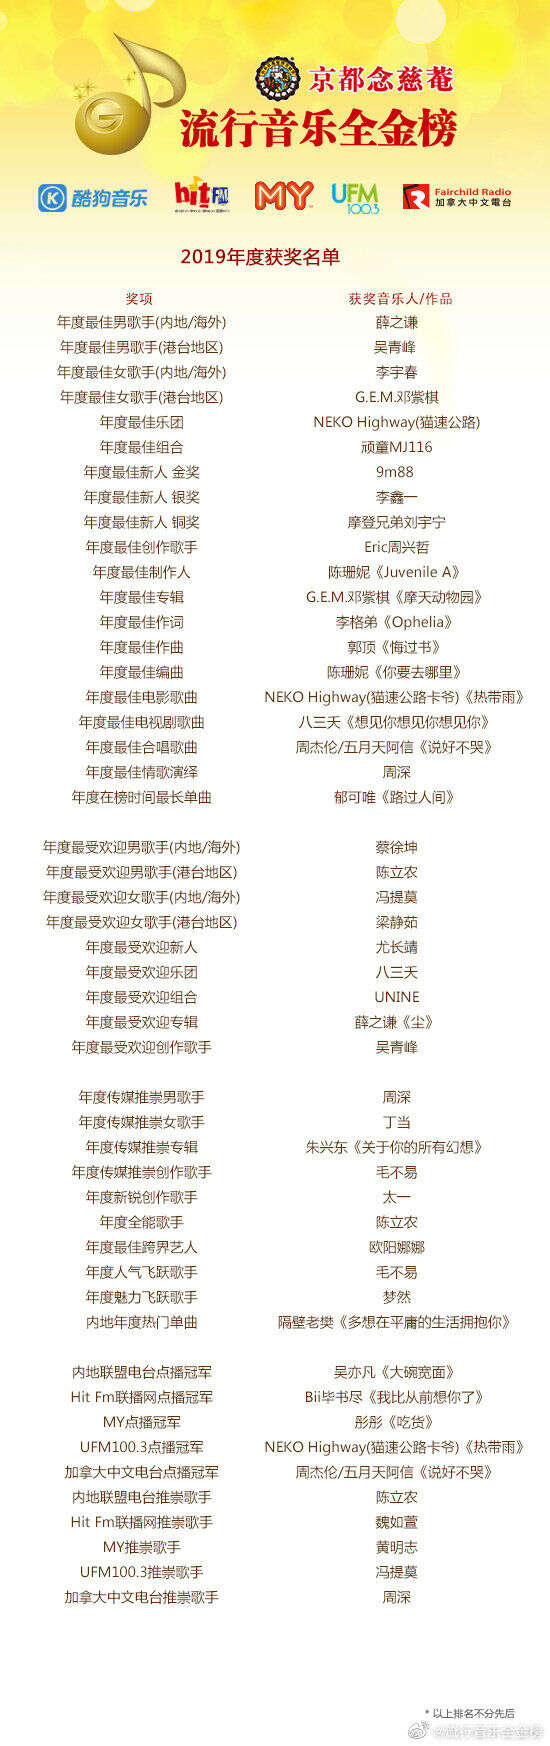 0910 流行音乐全金奖19年获奖名单公布蔡徐坤荣获年度最受欢迎男歌手 楠木轩